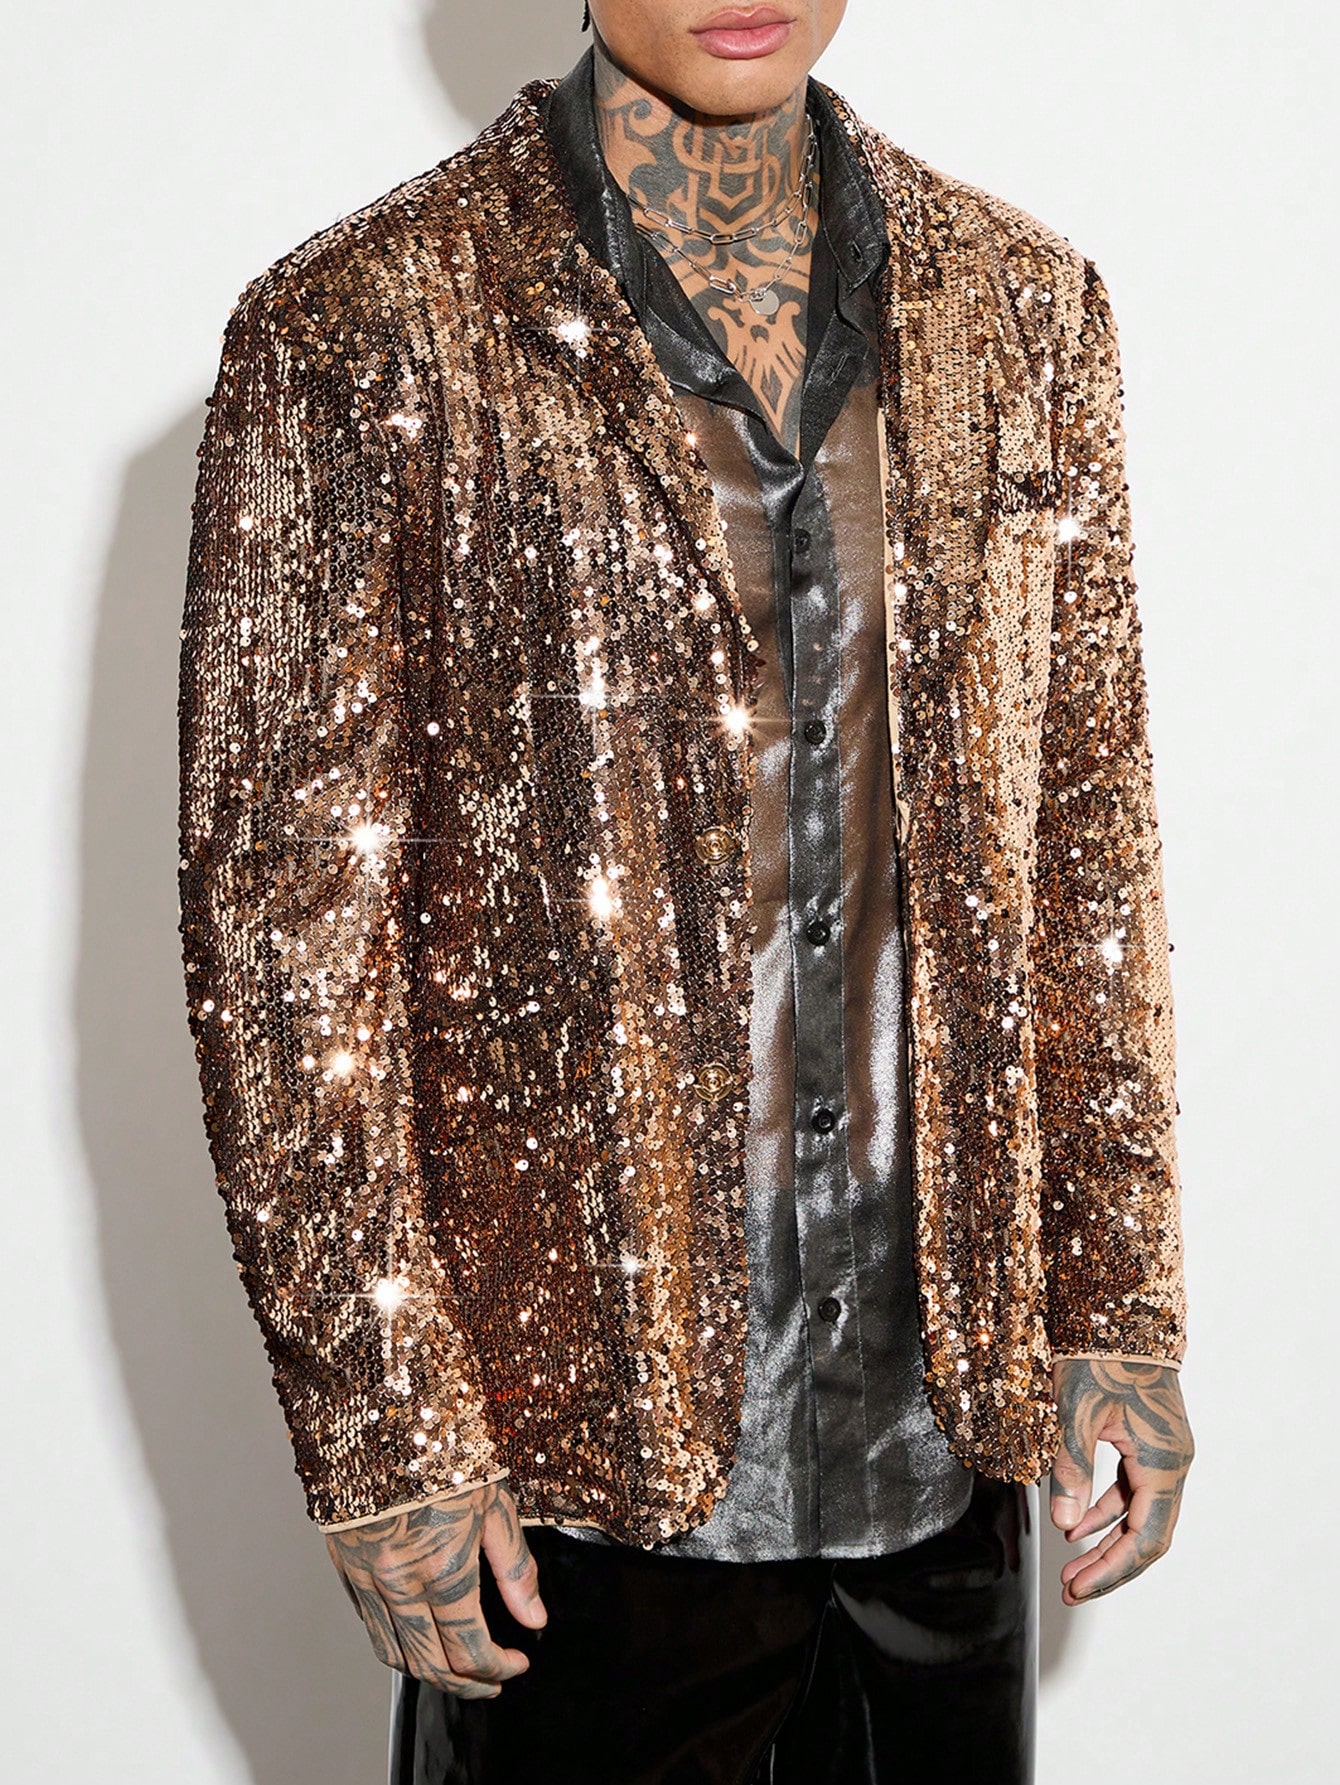 Мужской блестящий пиджак с длинными рукавами Manfinity AFTRDRK, золото